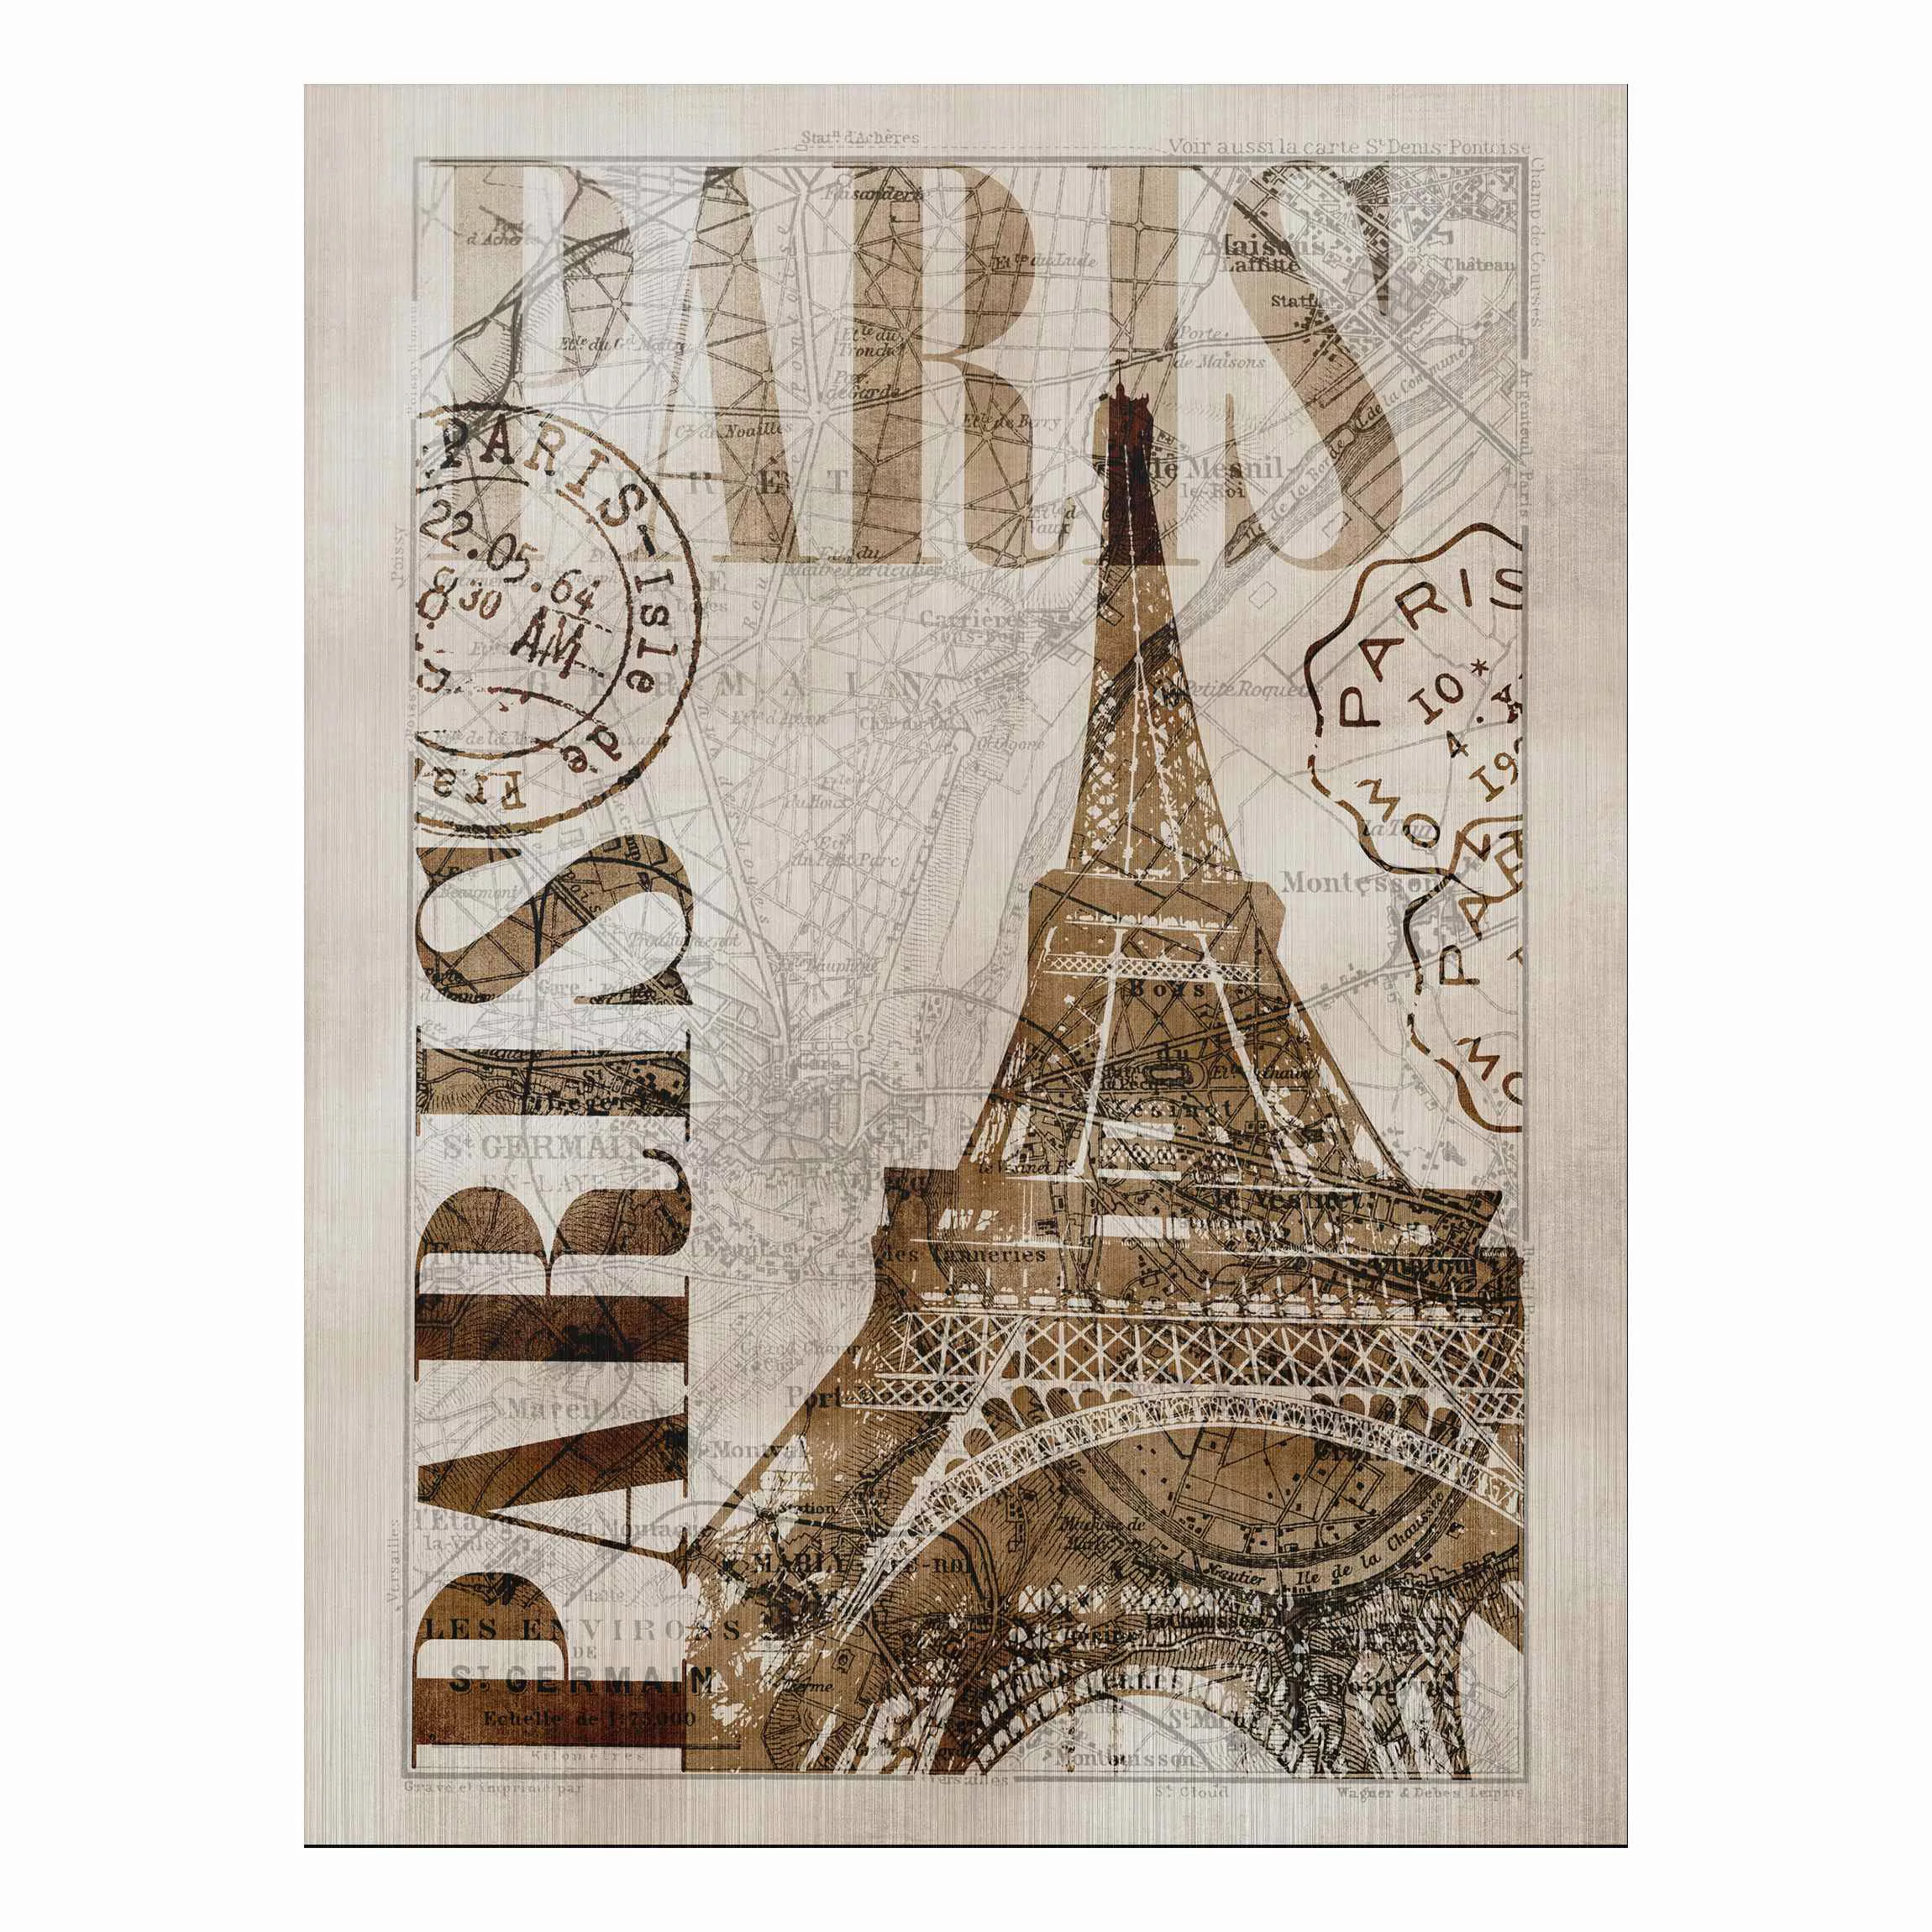 Alu-Dibond Bild - Hochformat 3:4 Shabby Chic Collage - Paris günstig online kaufen